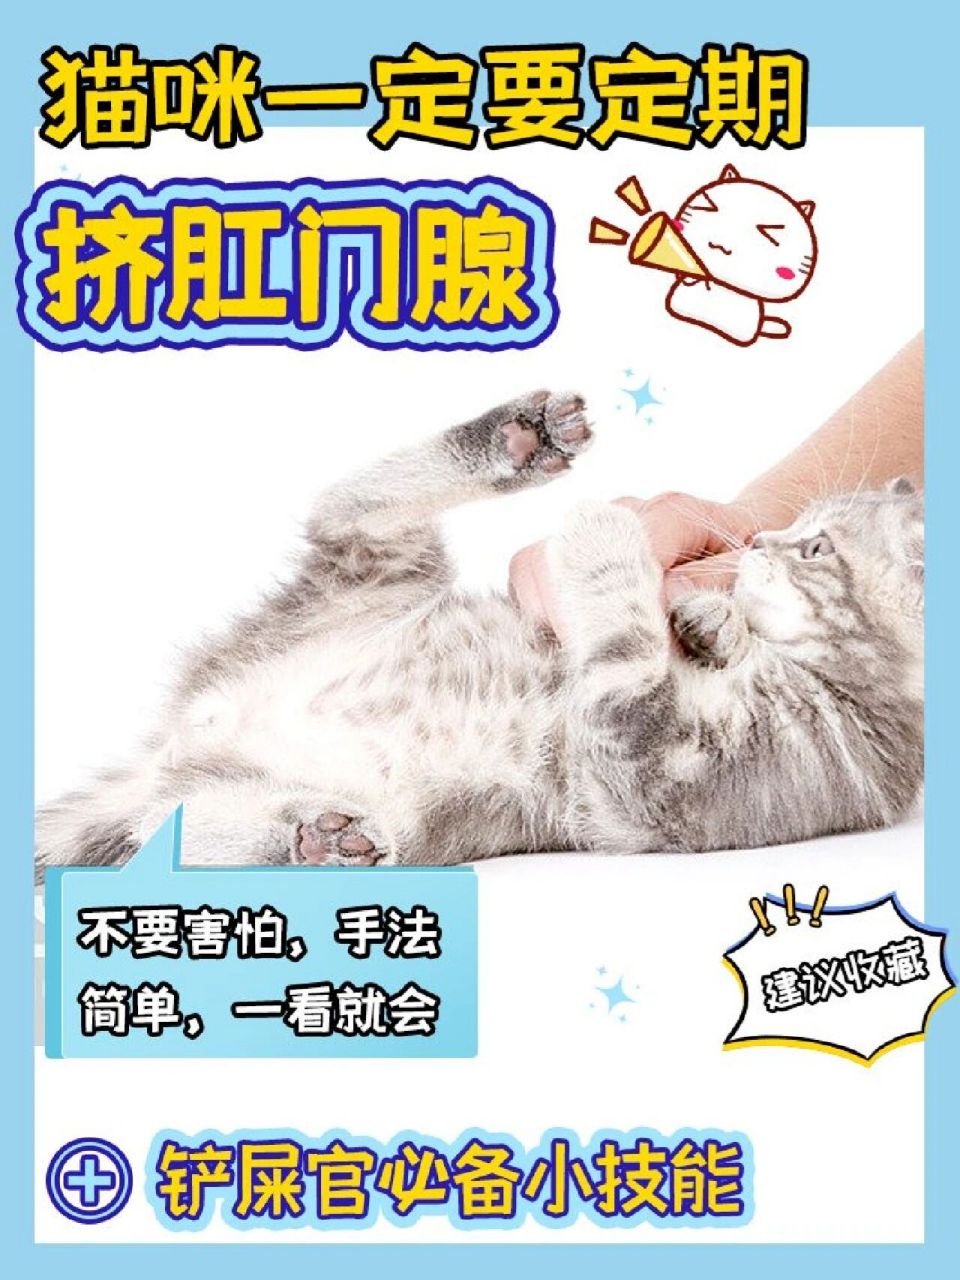 猫咪喷肛门腺液体图片